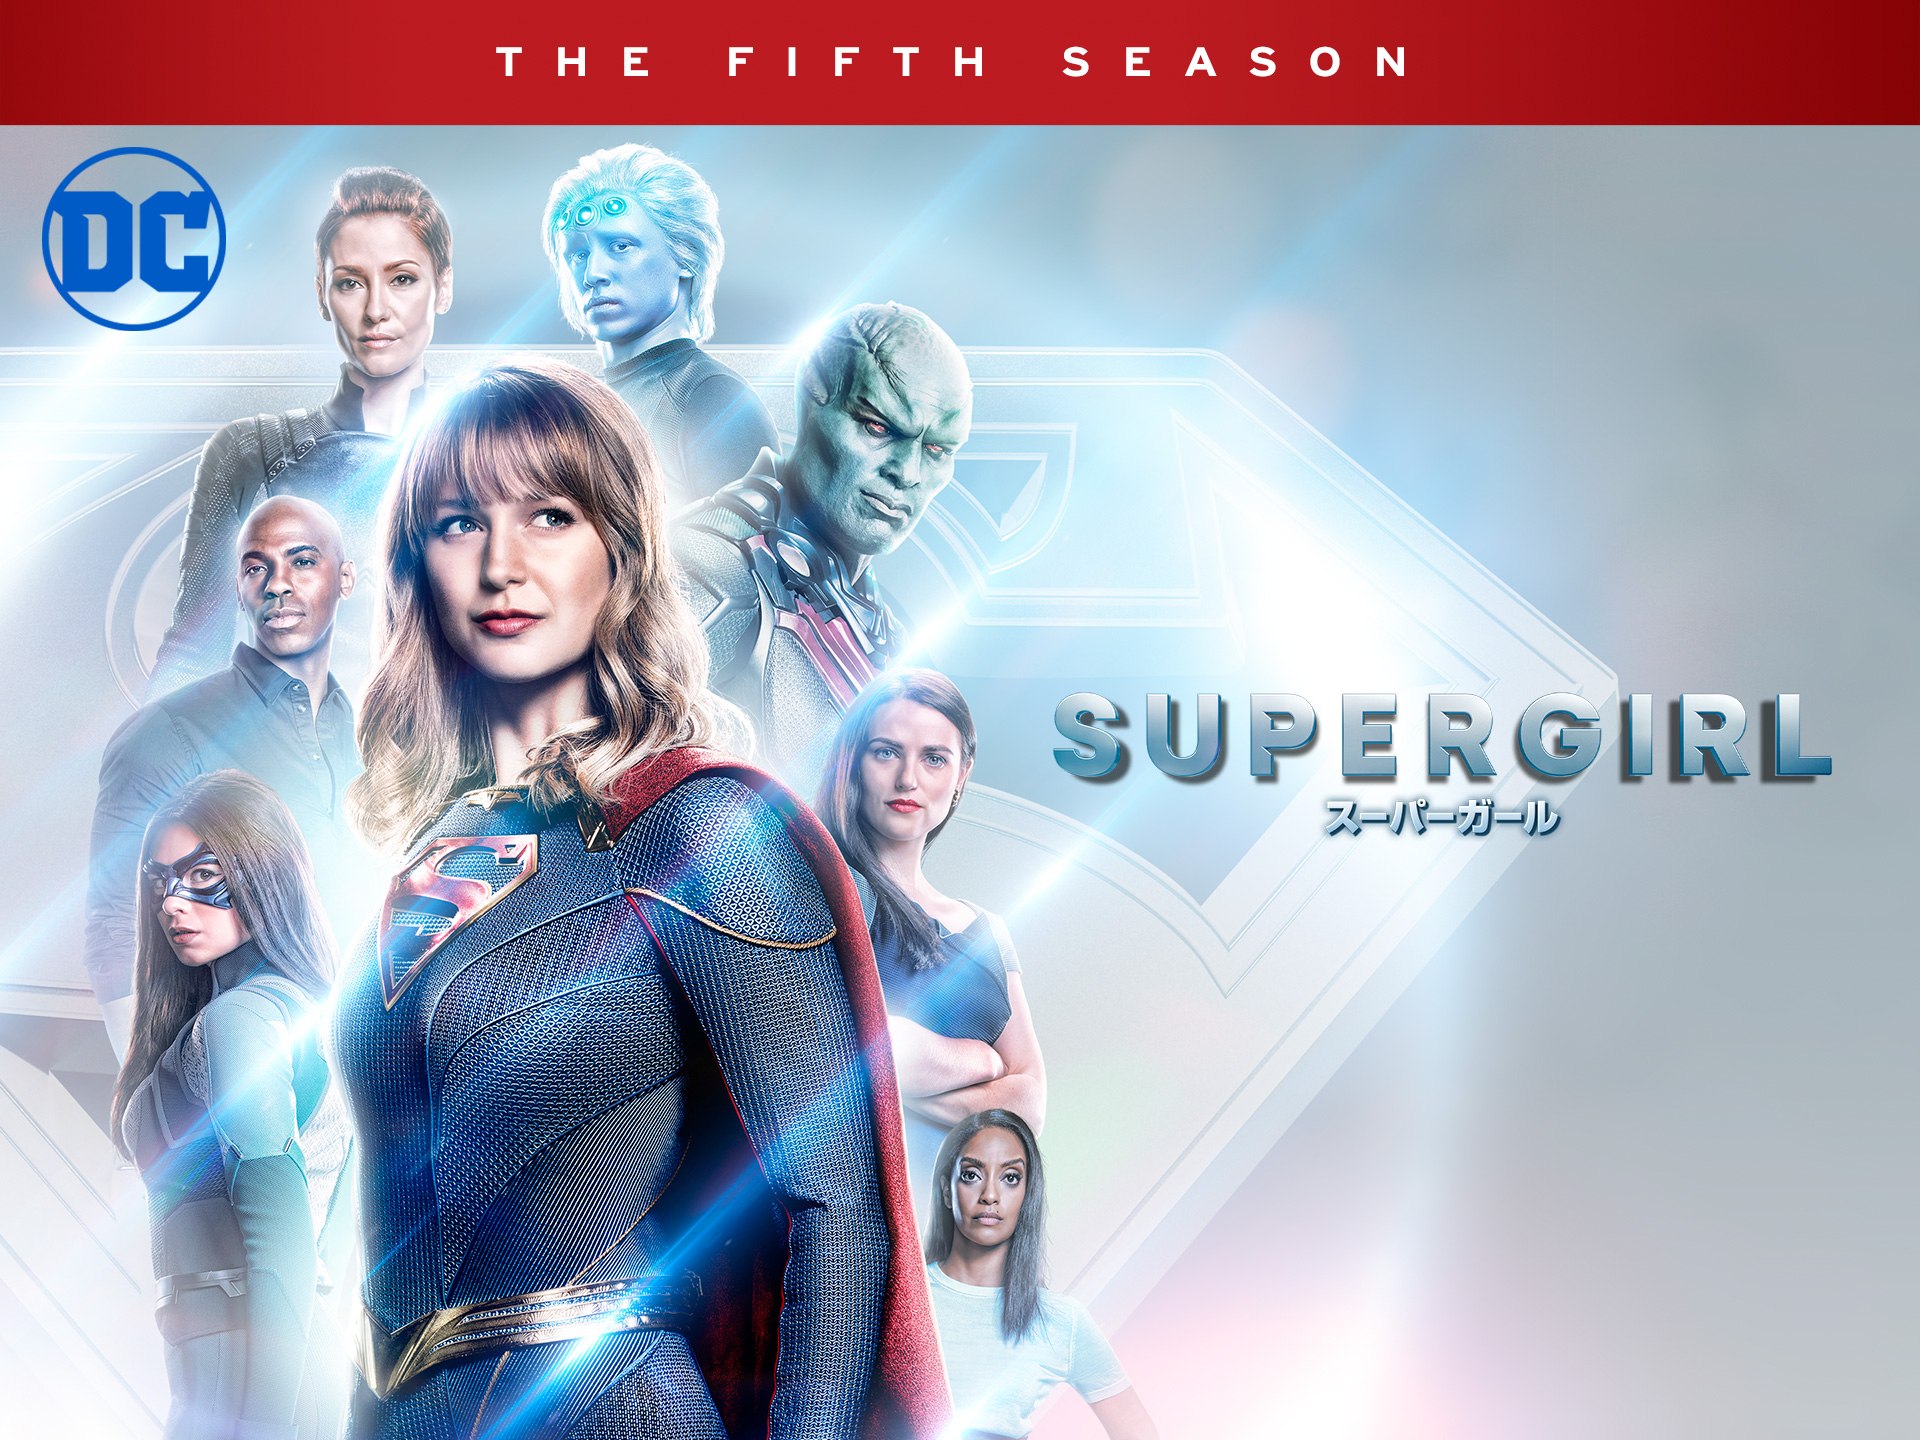 ドラマ Supergirl スーパーガール フィフス シーズン の動画まとめ 初月無料 動画配信サービスのビデオマーケット